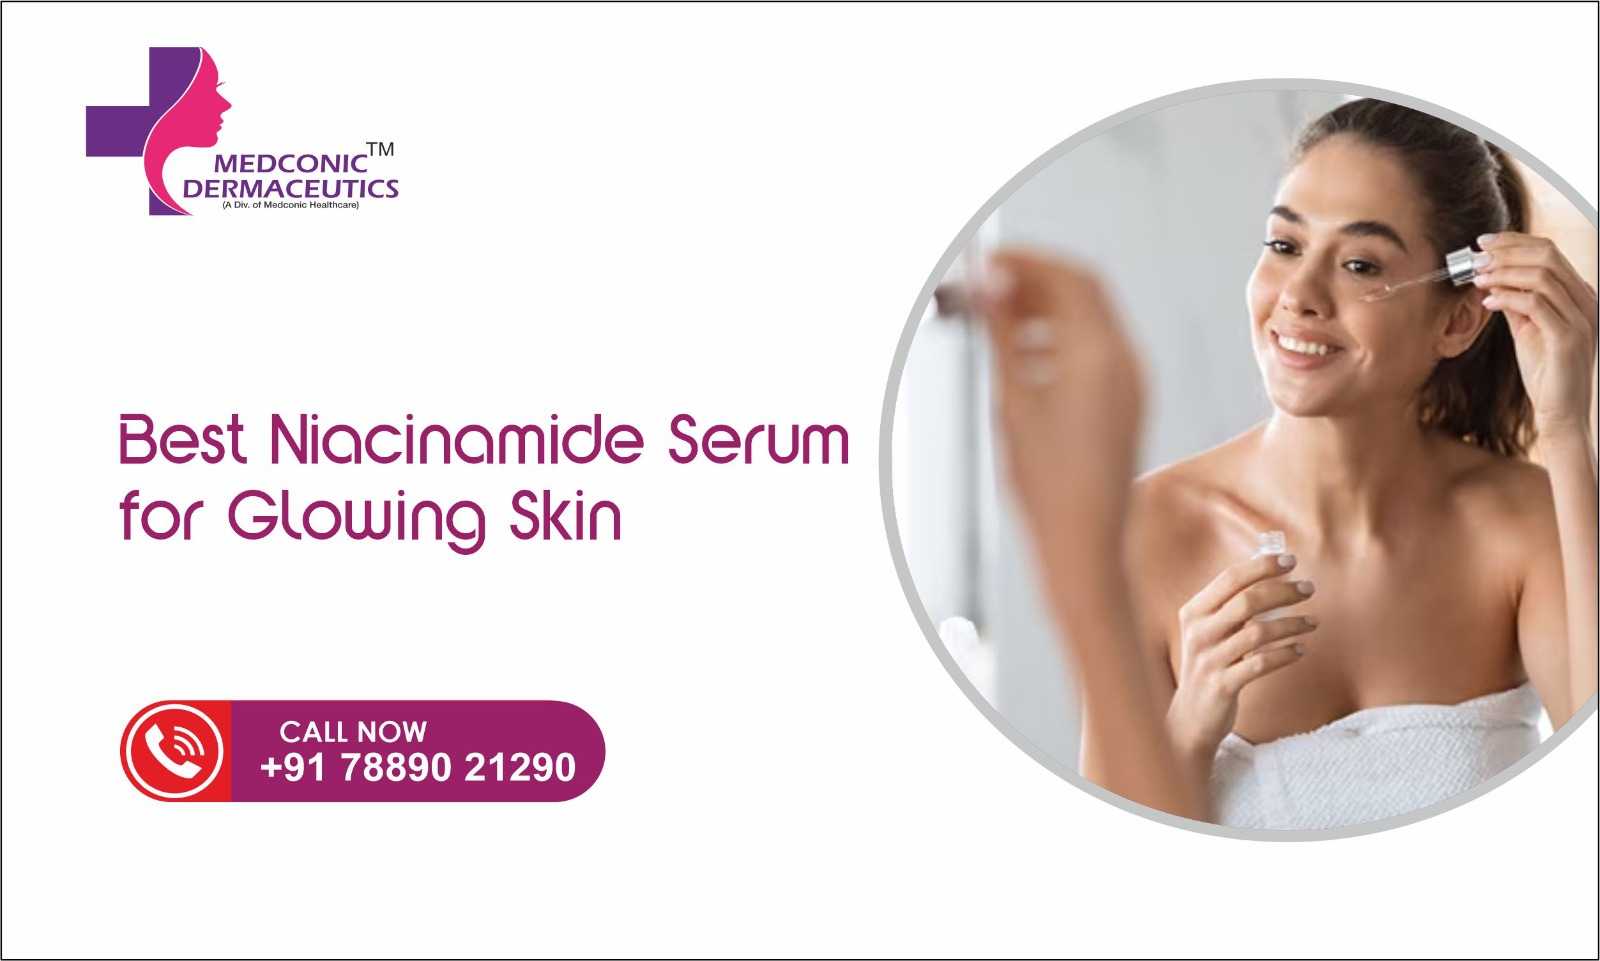 Best Niacinamide Serum for Glowing Skin